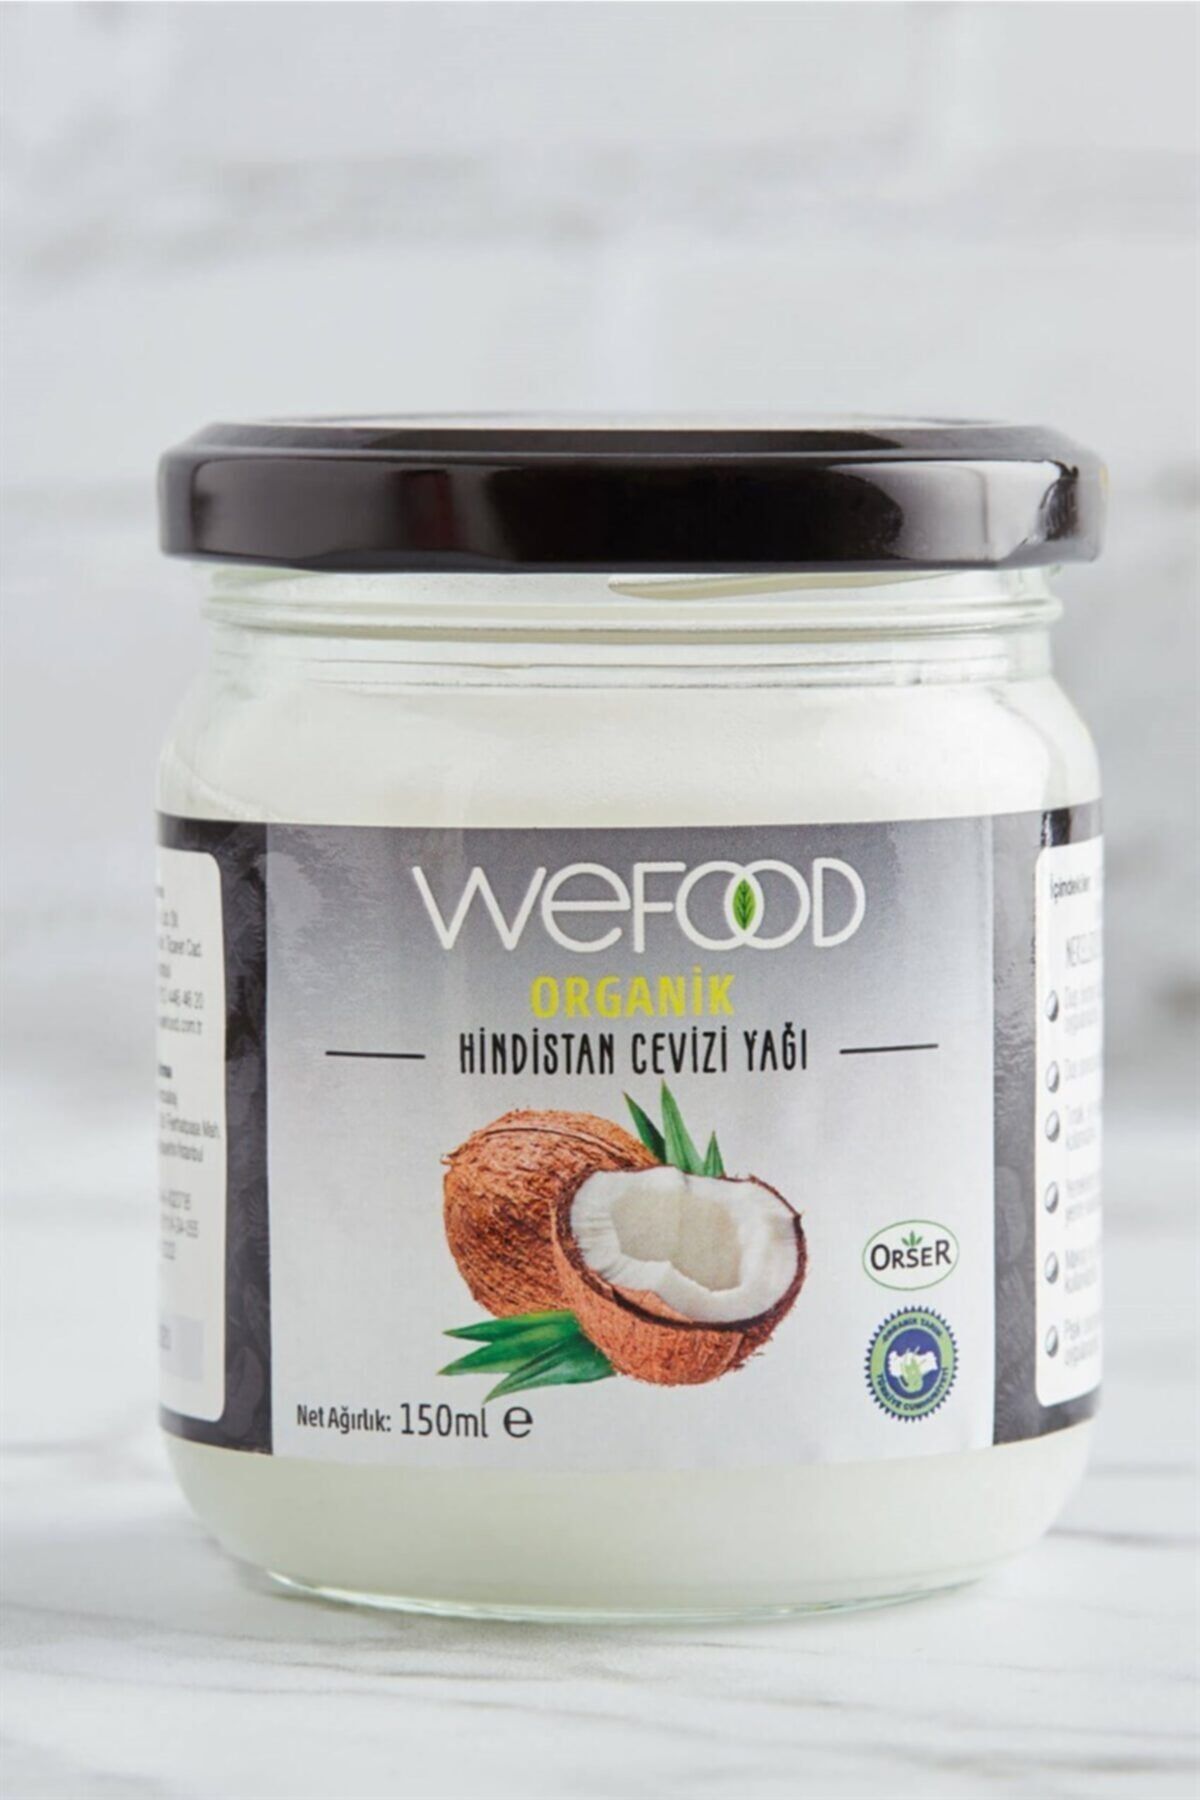 Wefood Organik Hindistan Cevizi Yağı 150 ml